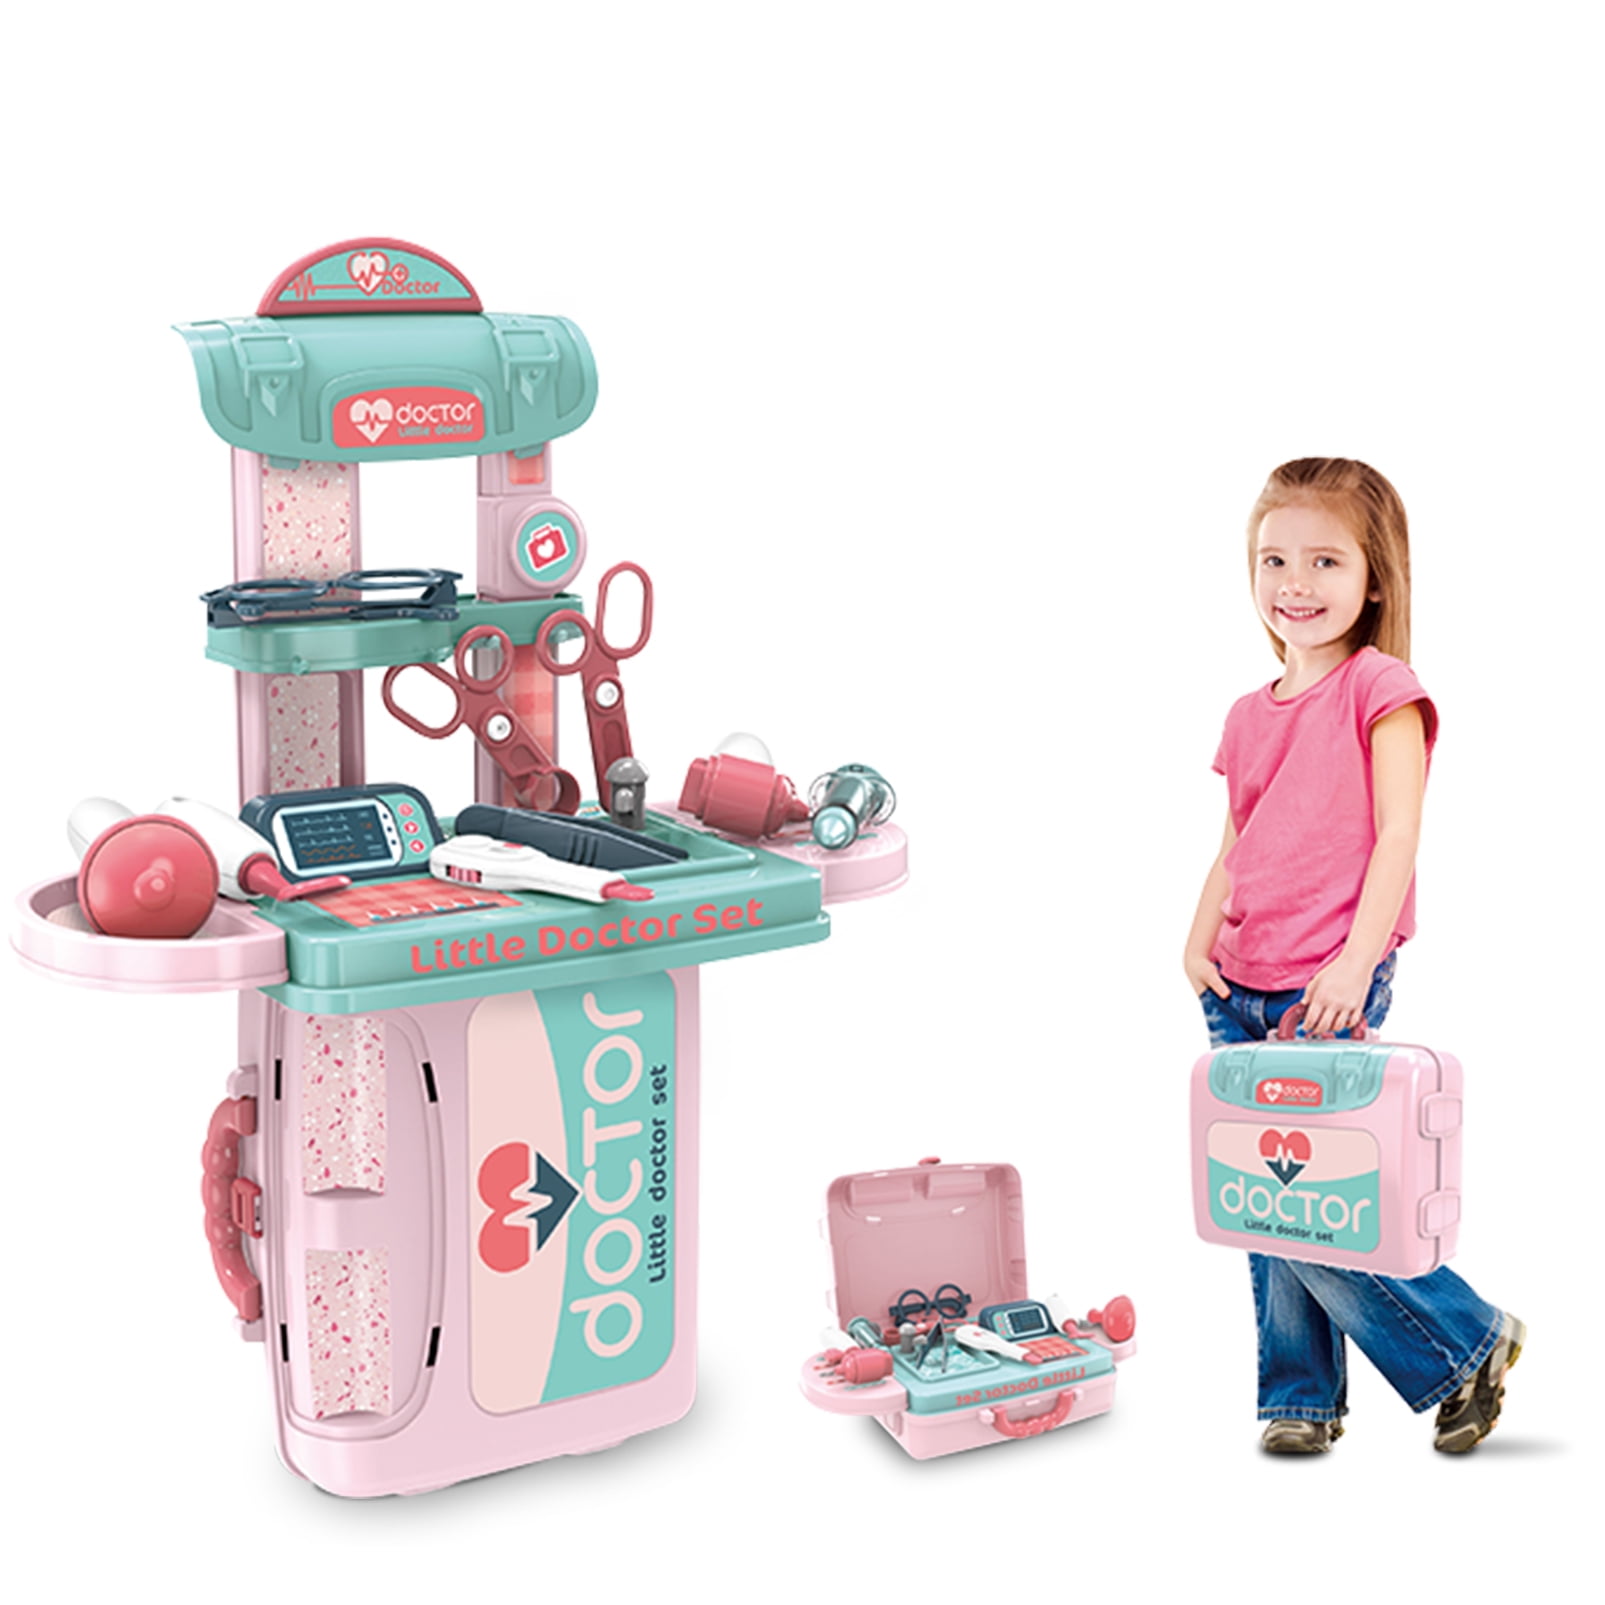 Pretend Play Set Kids Boys Girls Gift Toys 27 Pack Deluxe Doctor Medical Kit 